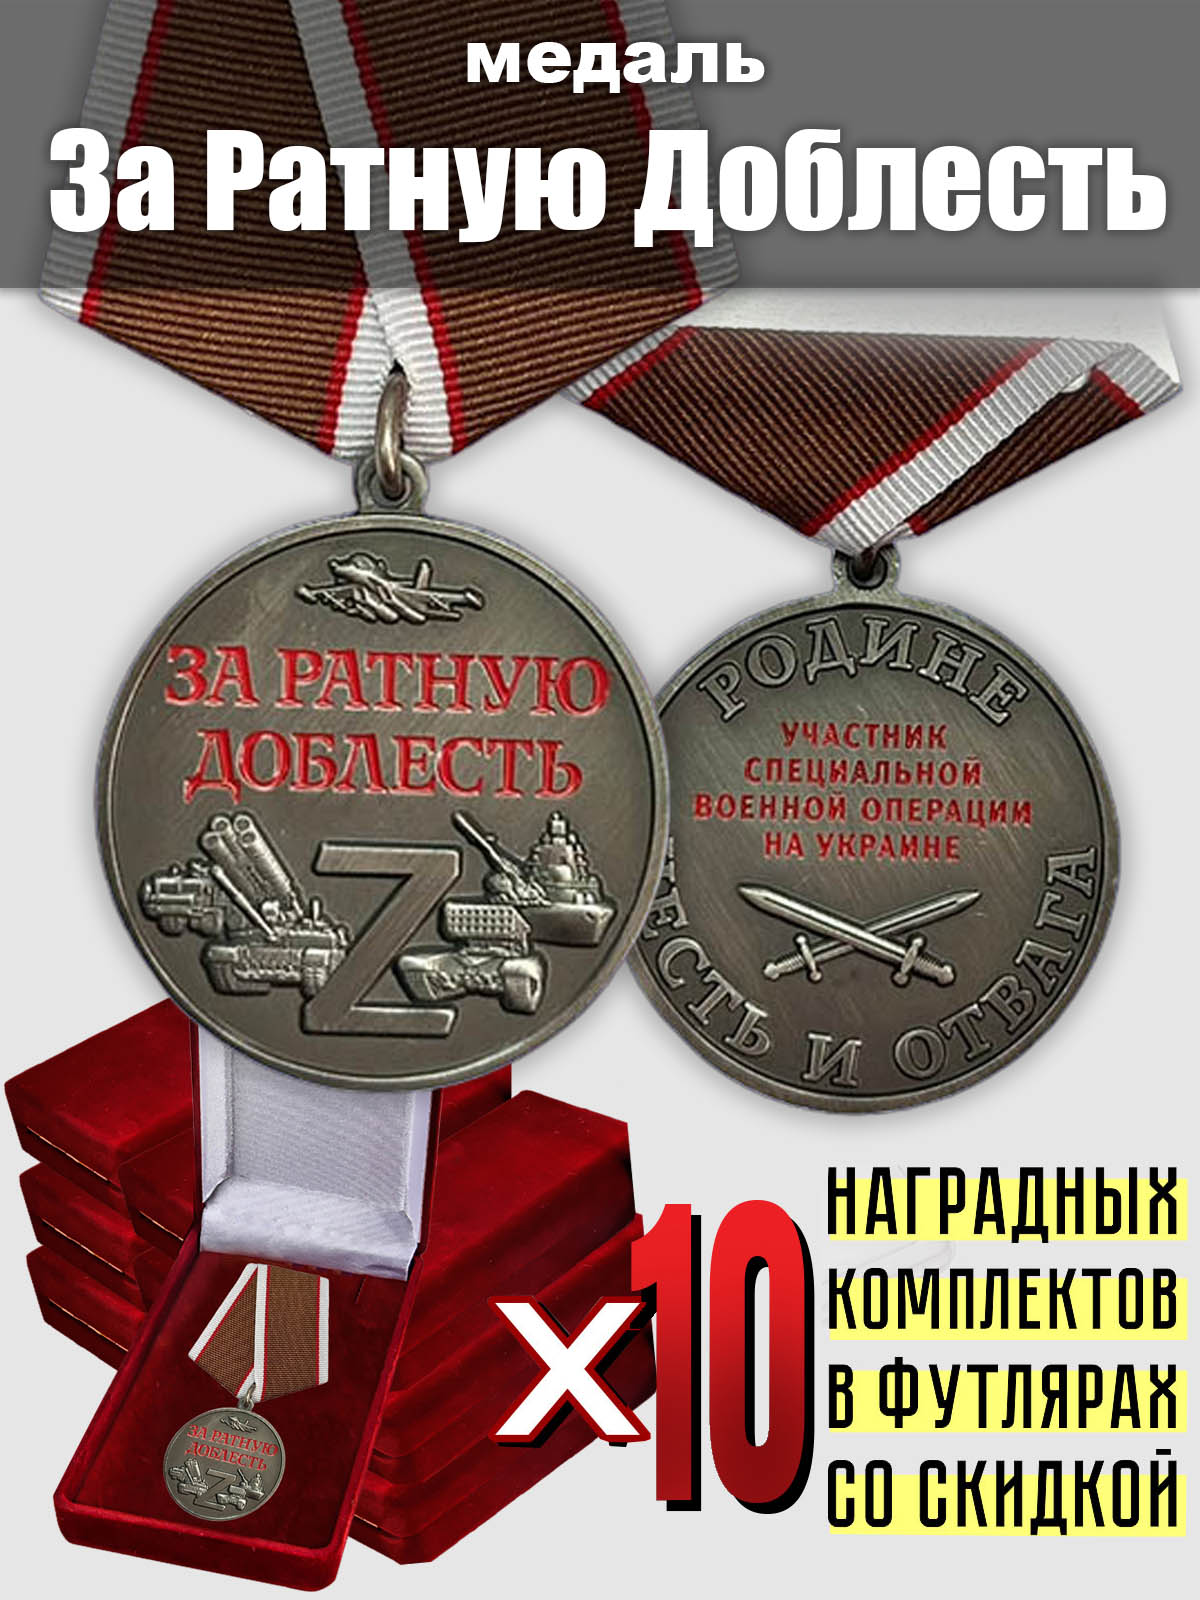 Медали "За ратную доблесть" участникам СВО (10 шт.)